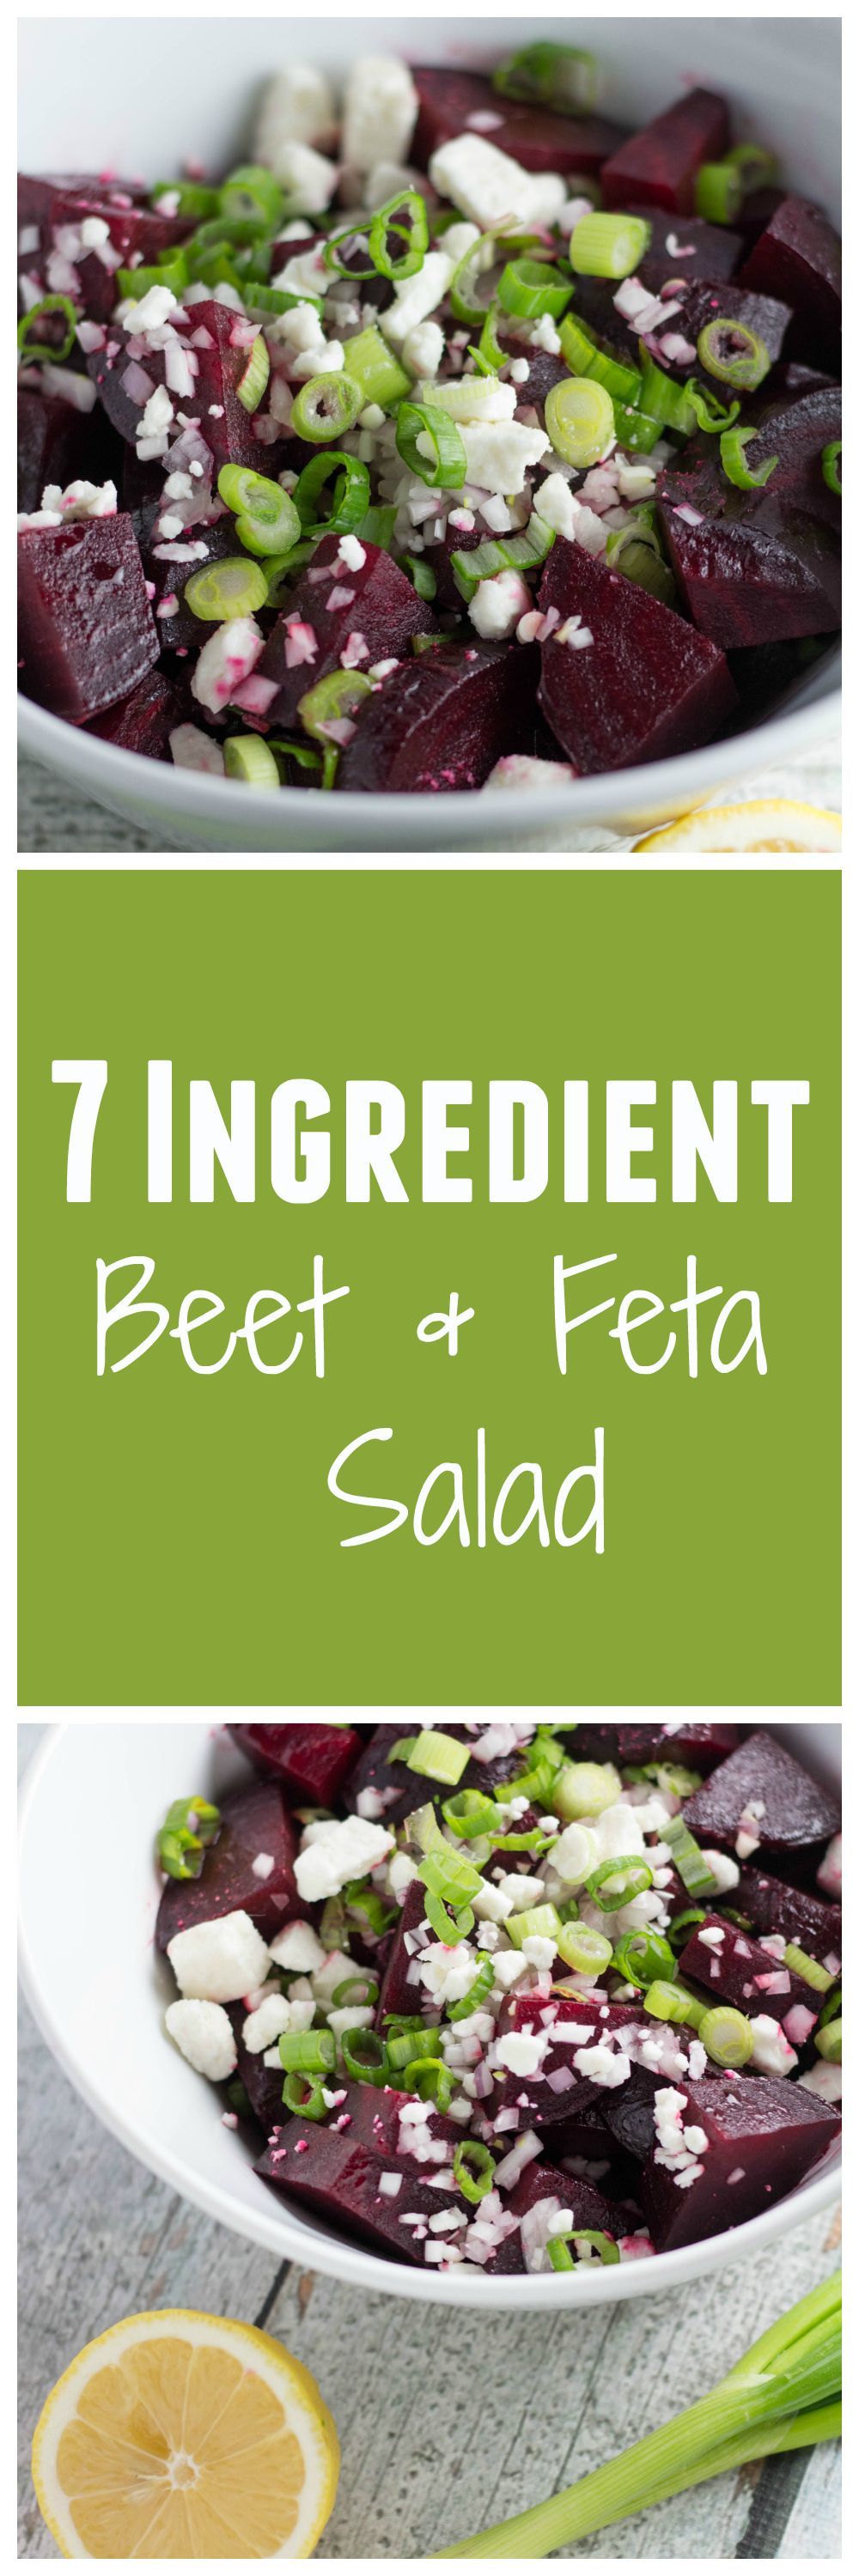 Flavorful Spring Salad! 7-Ingredient Beet and Feta Salad is one for the books! |Krollskorner.com